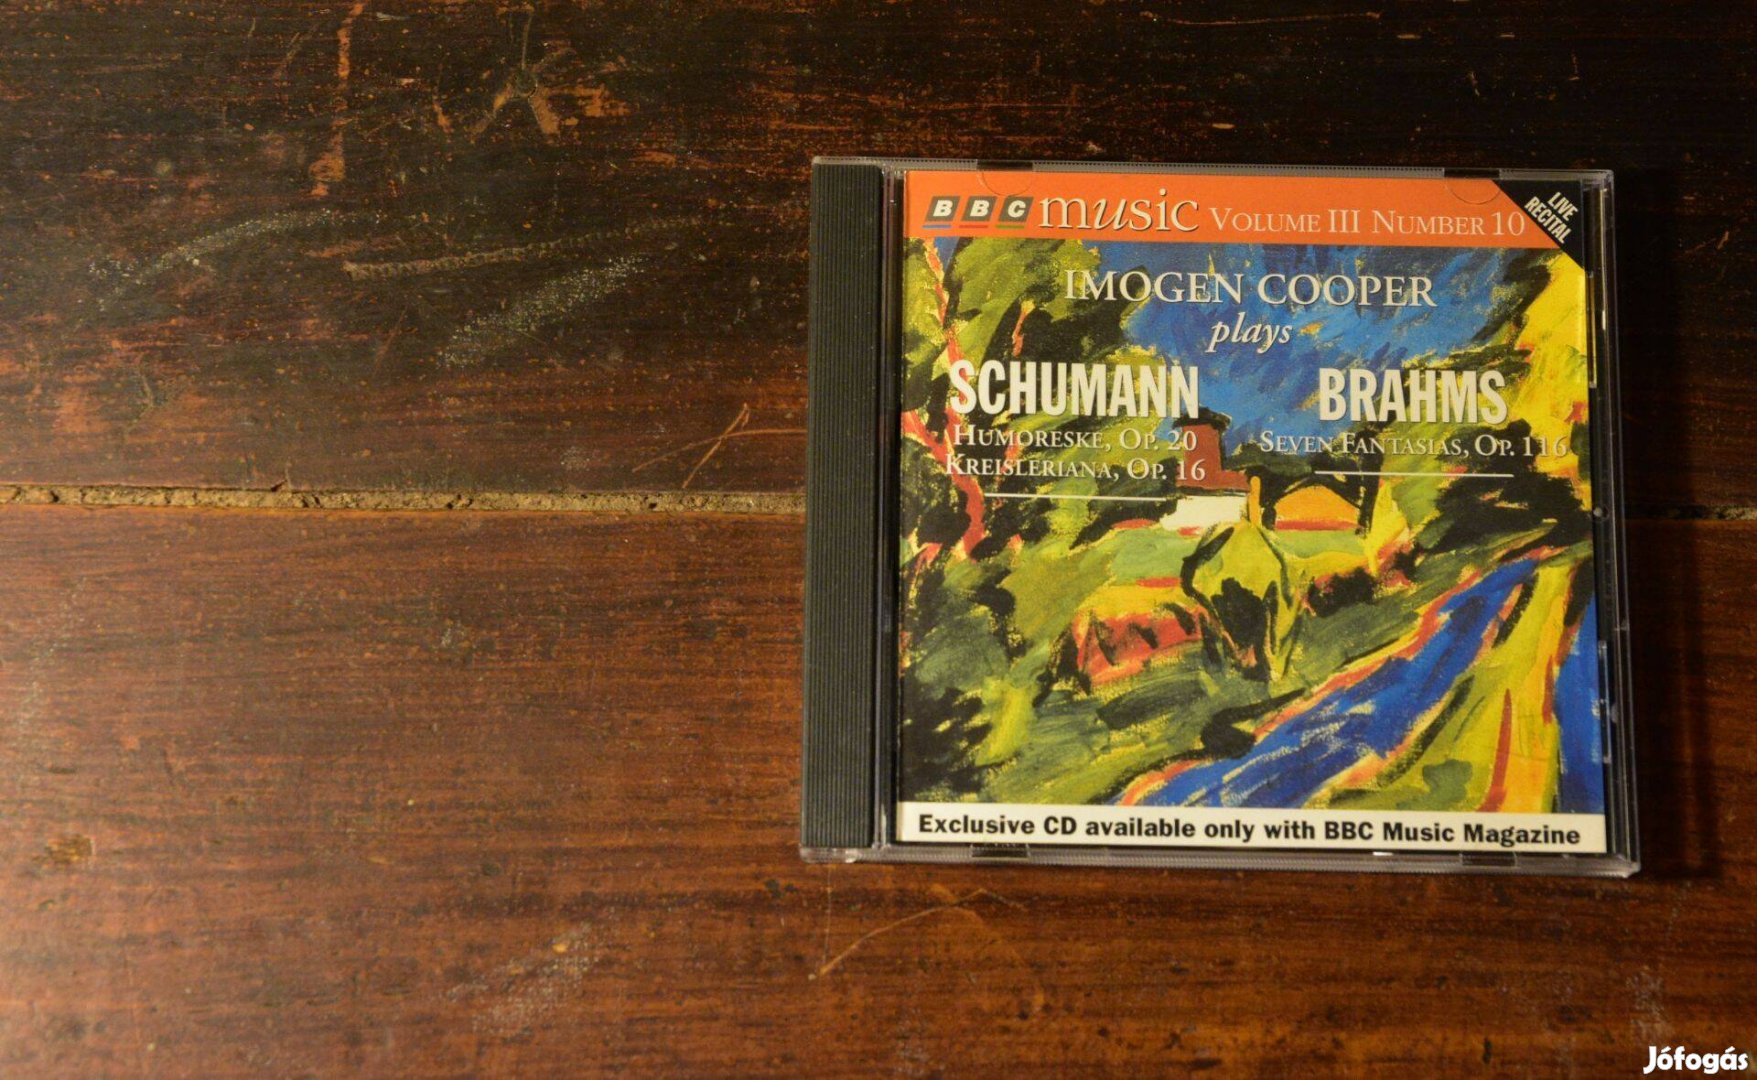 CD Imogen Cooper plays Schumann Brahms